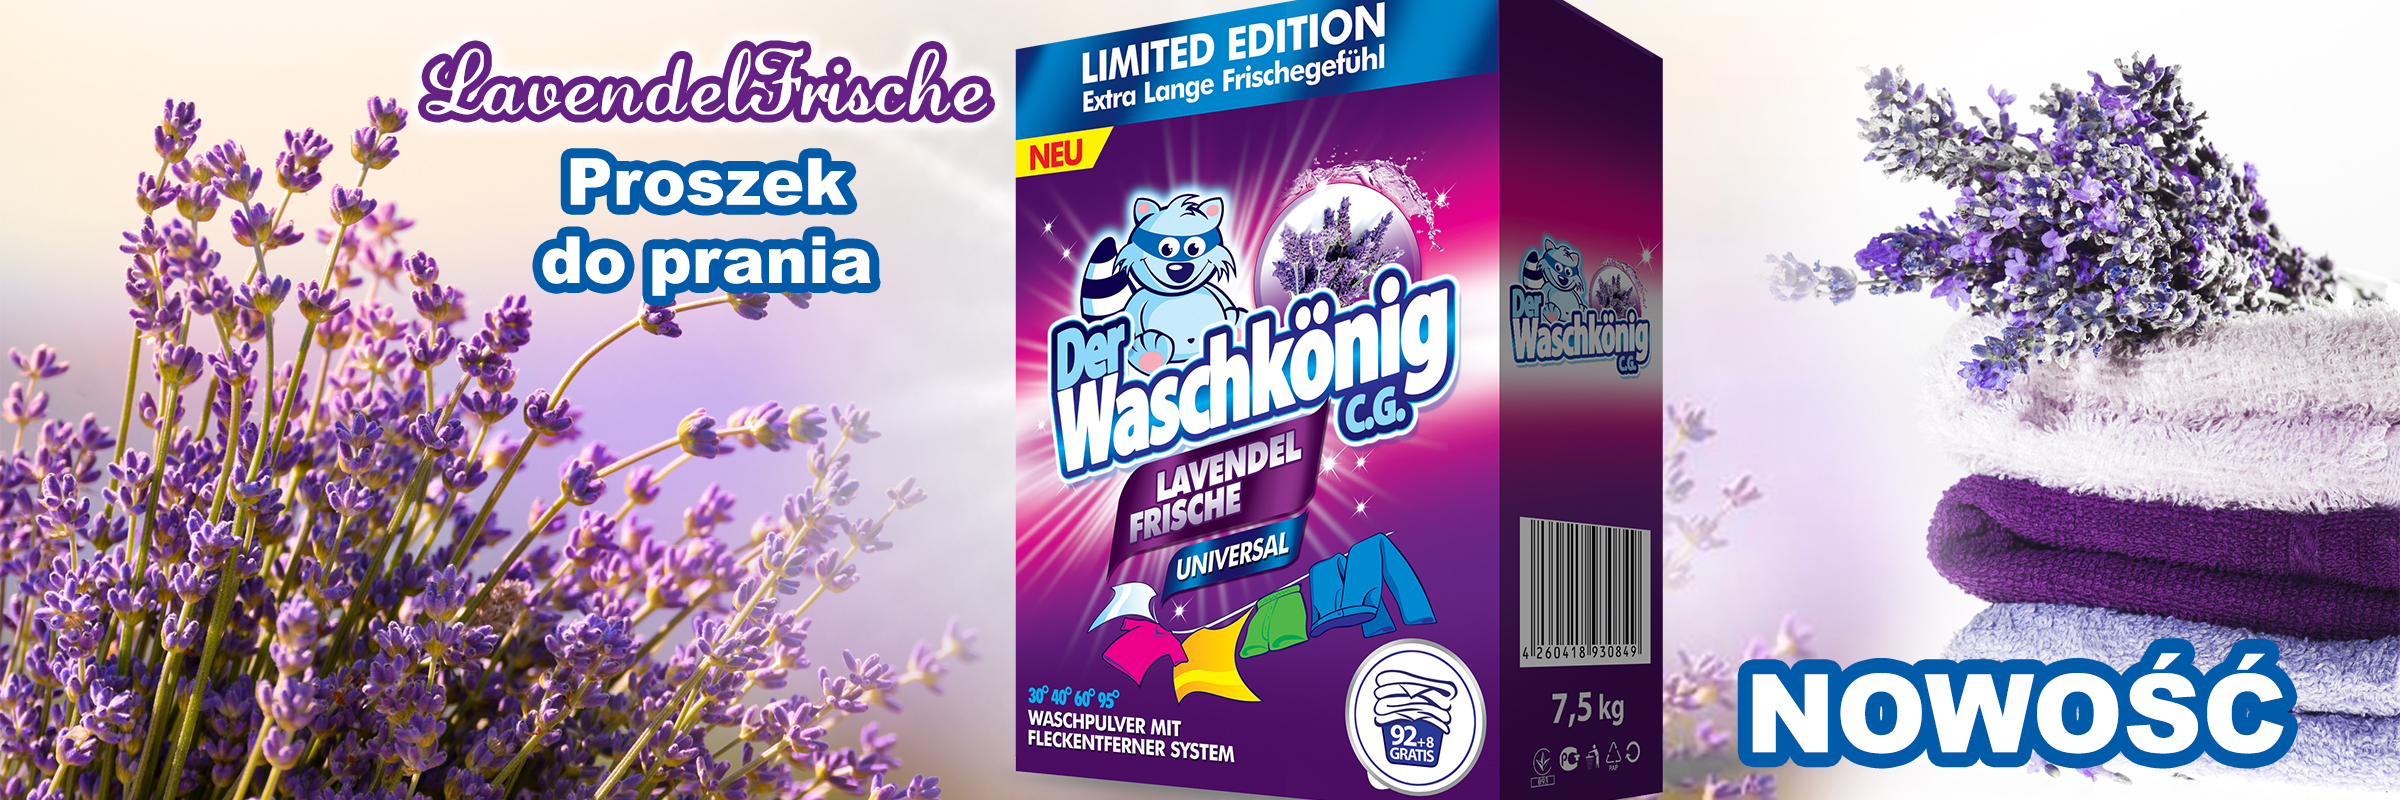 Proszek do prania Der Waschkönig Lavendel Frische Universal 7,5 kg – 100 WL Limited Edition